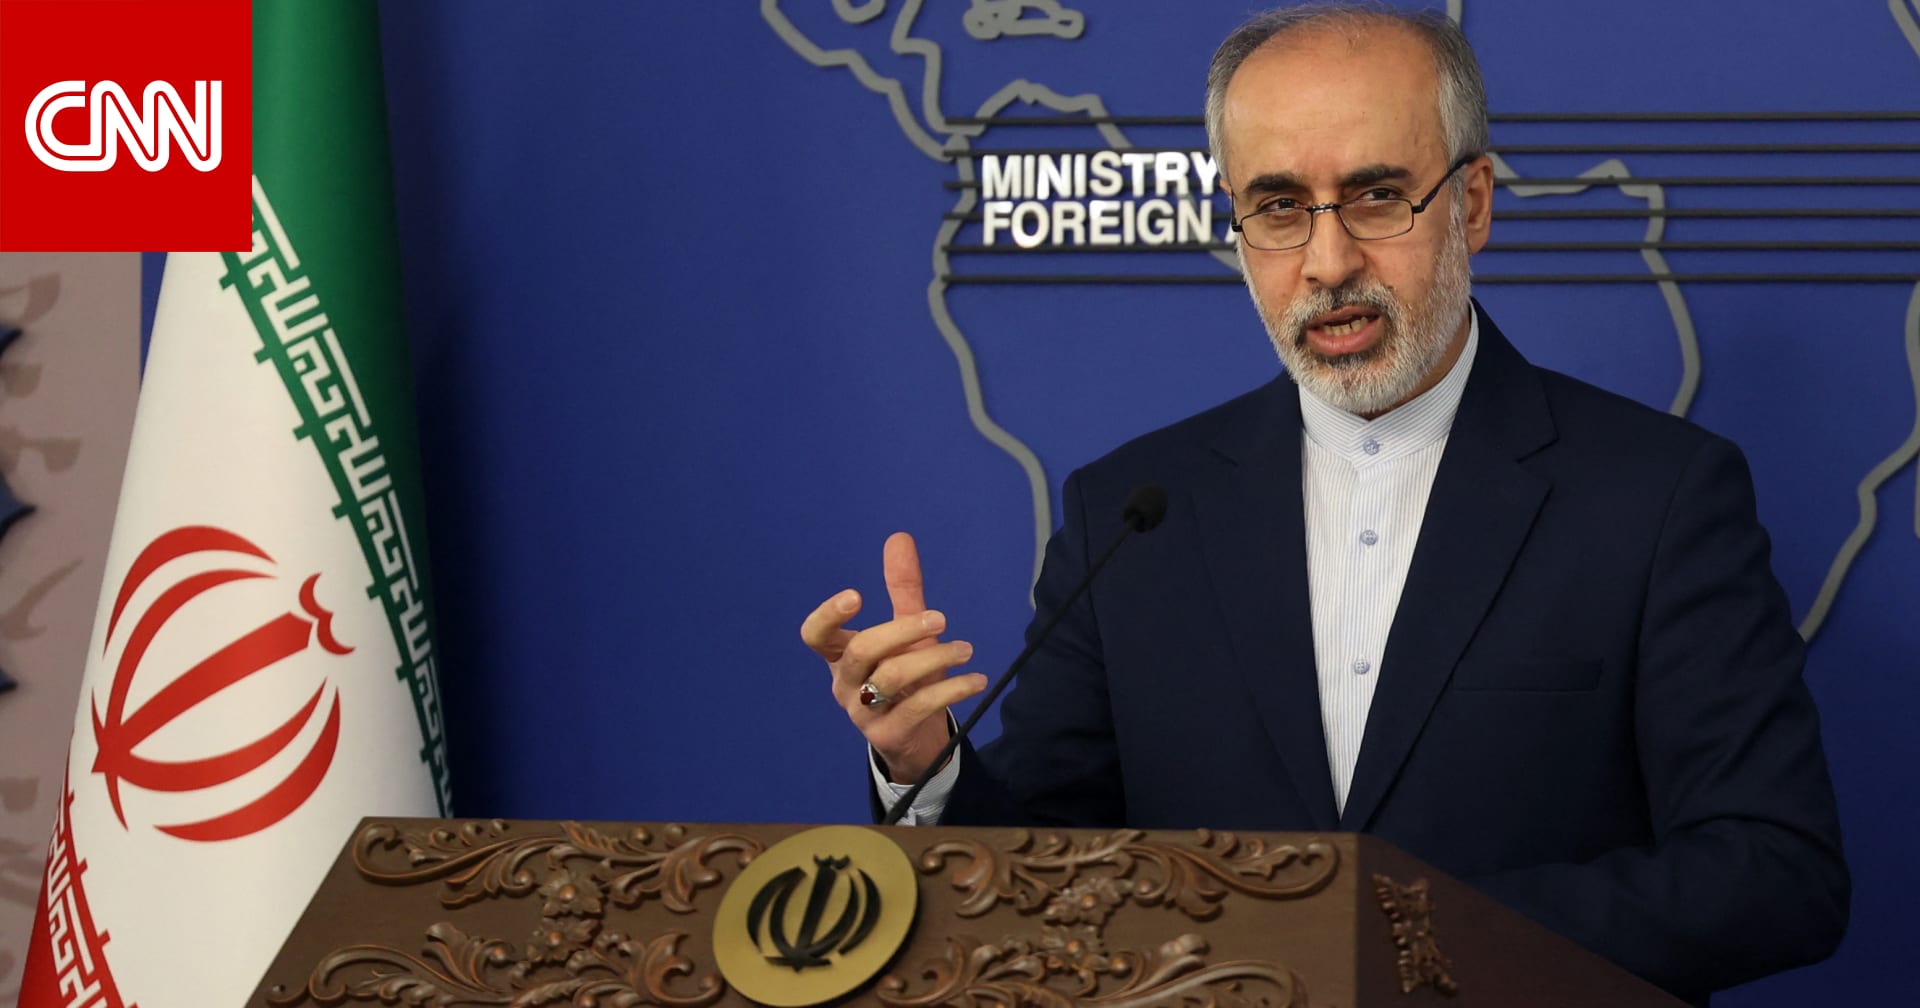 متحدث الخارجية الإيرانية يعلق على وقوع هجمات ضد المصالح الأمريكية بالمنطقة..ويؤكد: "أنتظر خطاب حسن نصرالله"